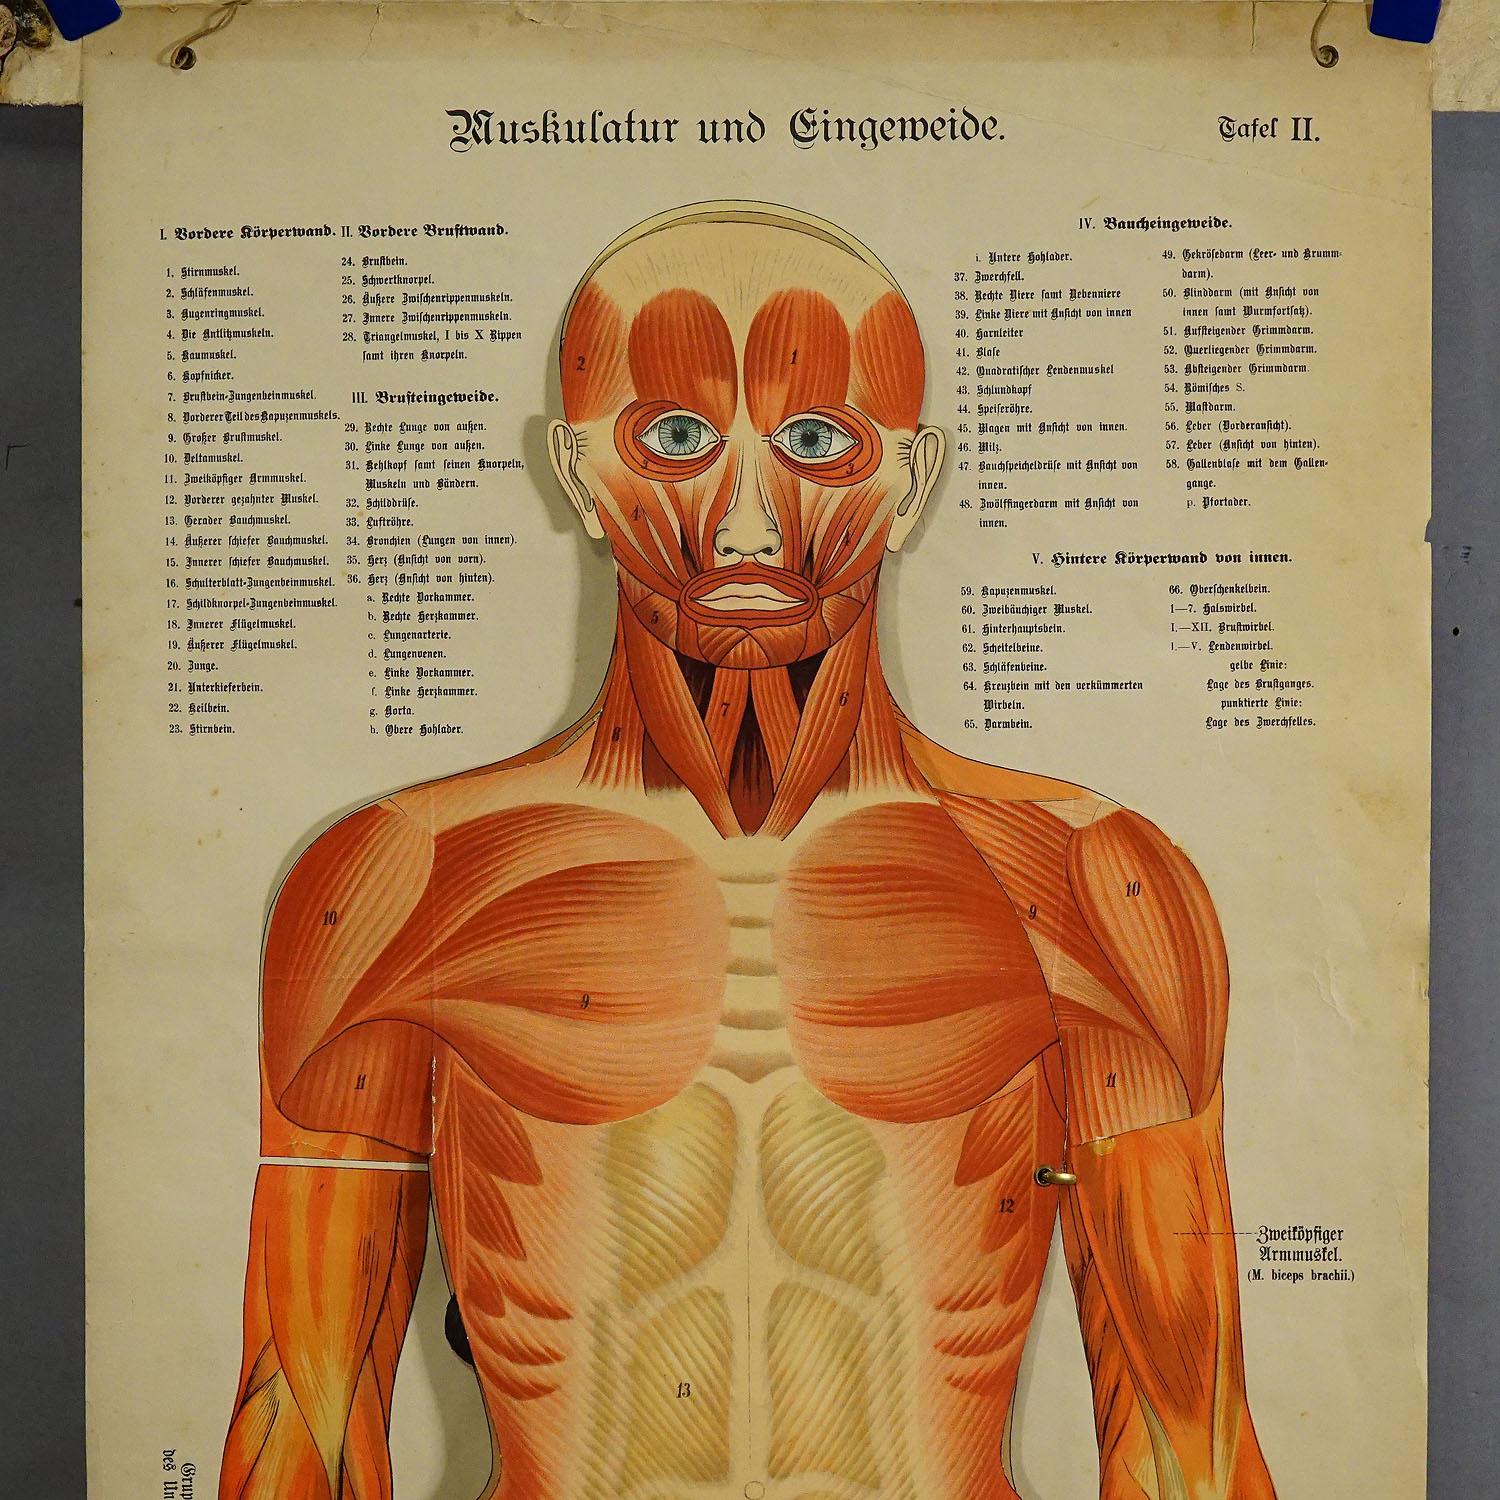 Eine seltene anatomische Wandtafel aus dem 19. Jahrhundert, die die menschliche Muskulatur und die inneren Organe darstellt. Mit herausnehmbaren mehrfarbigen menschlichen Organen wie Lunge, Herz, Leber, Niere etc. Durch die Faltung der vielen